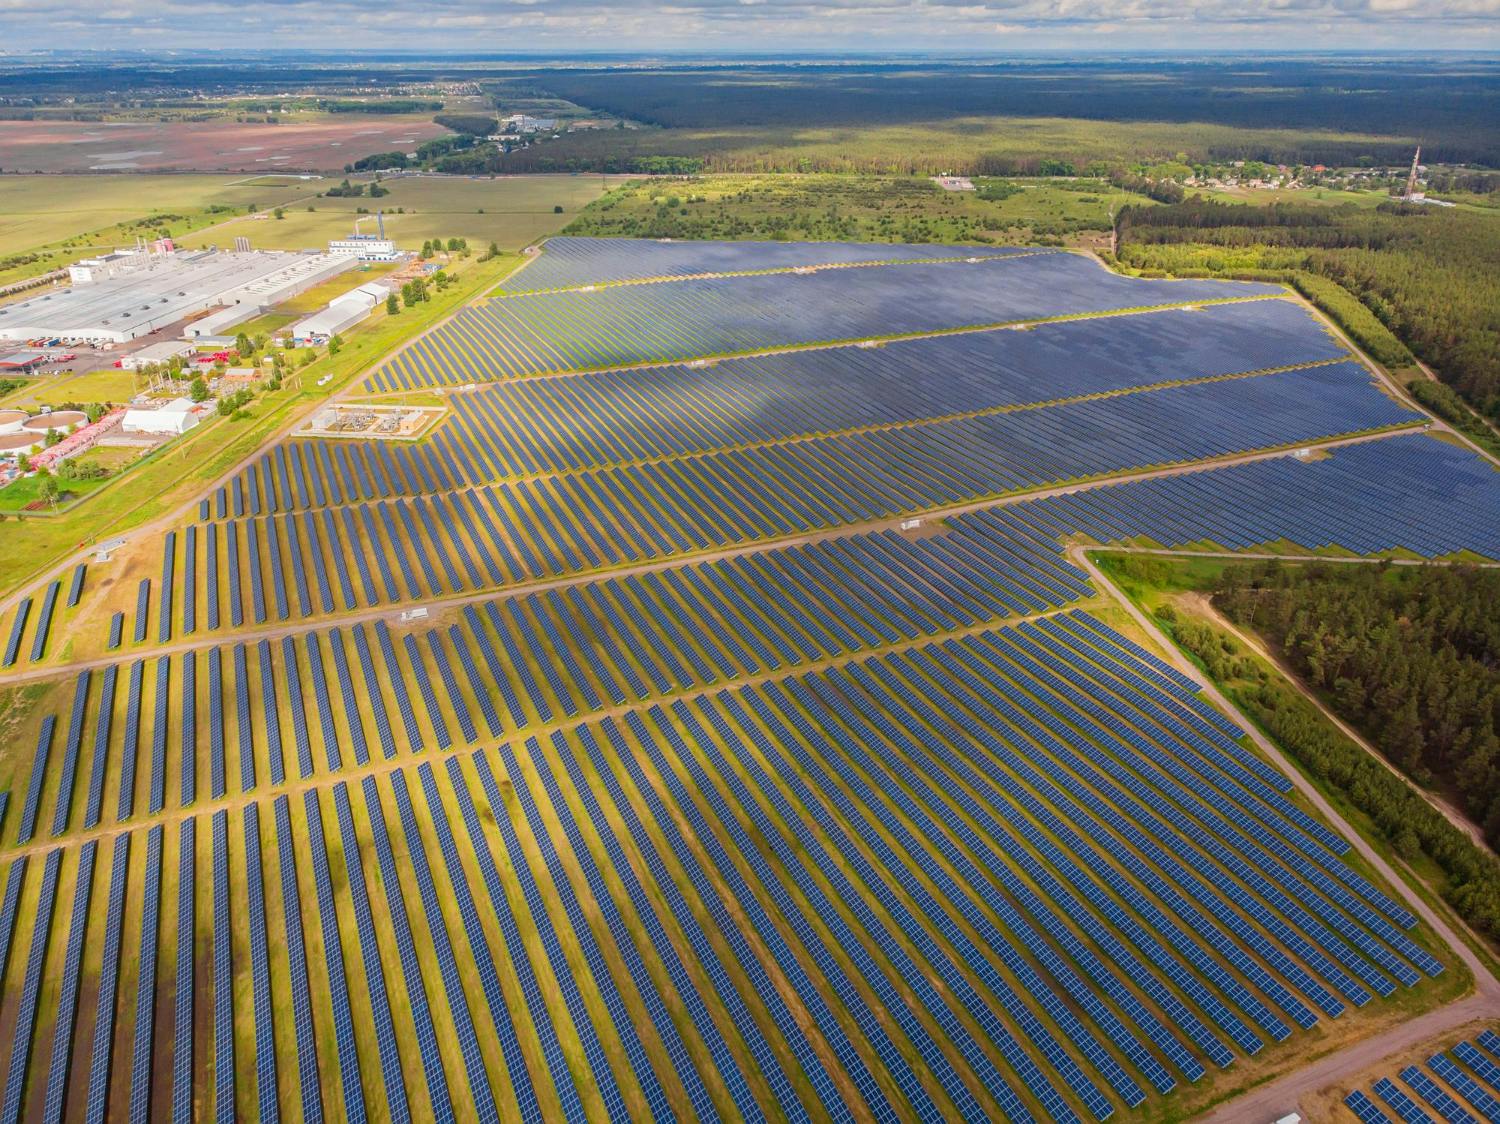 grande espaço rural com muitas placas solares, conhecido como fazendas solares